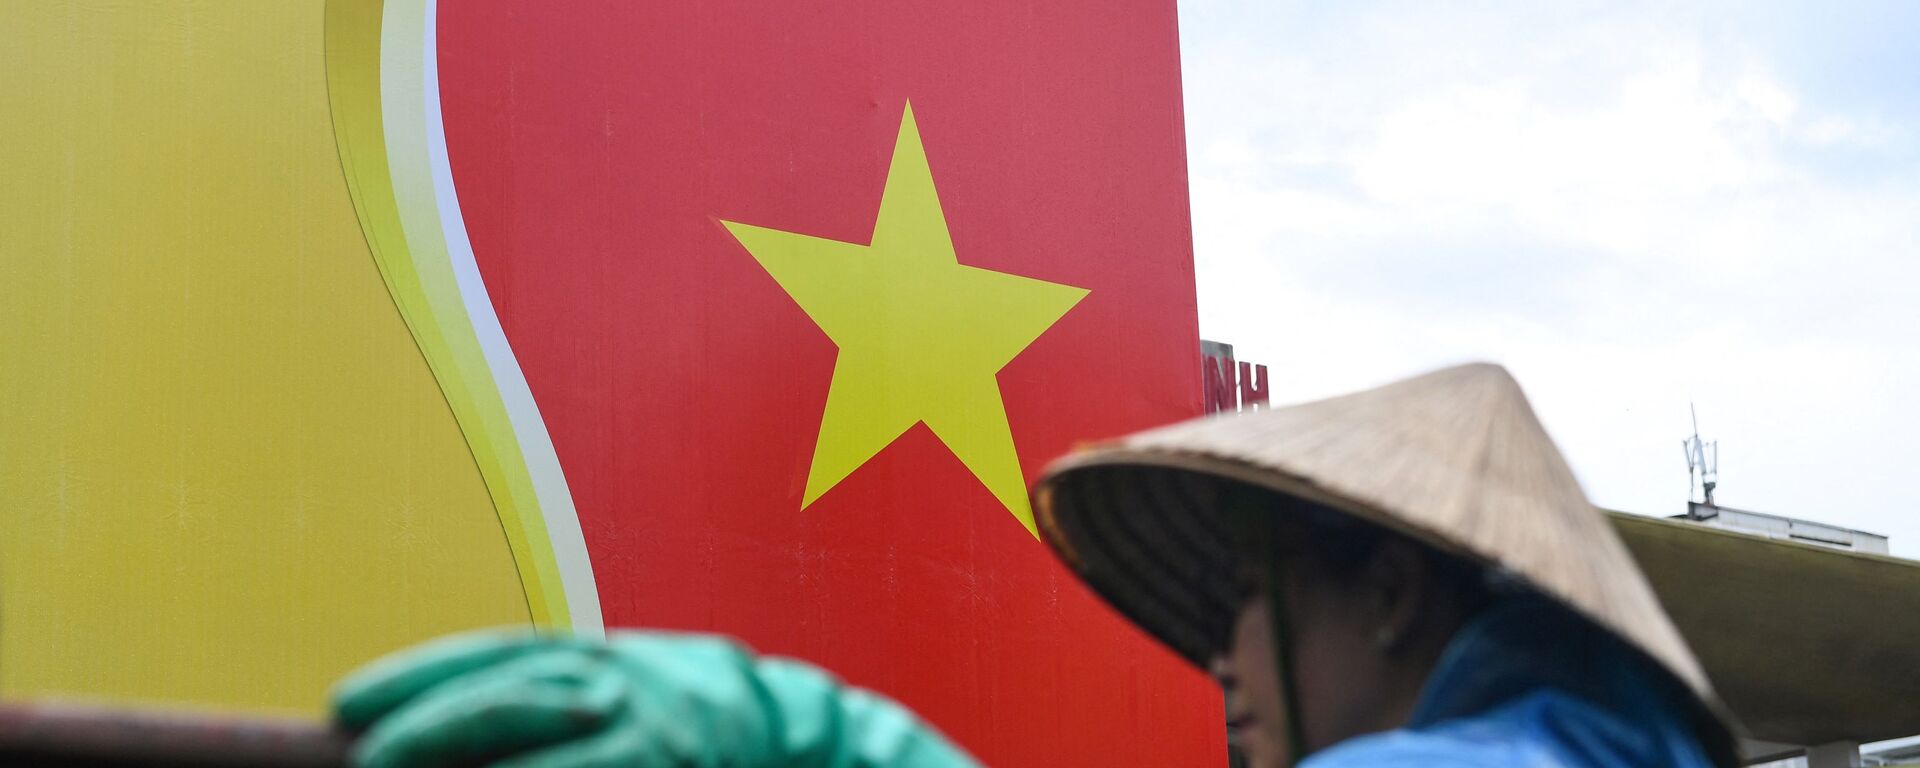 Quốc kỳ Việt Nam. - Sputnik Việt Nam, 1920, 11.06.2022